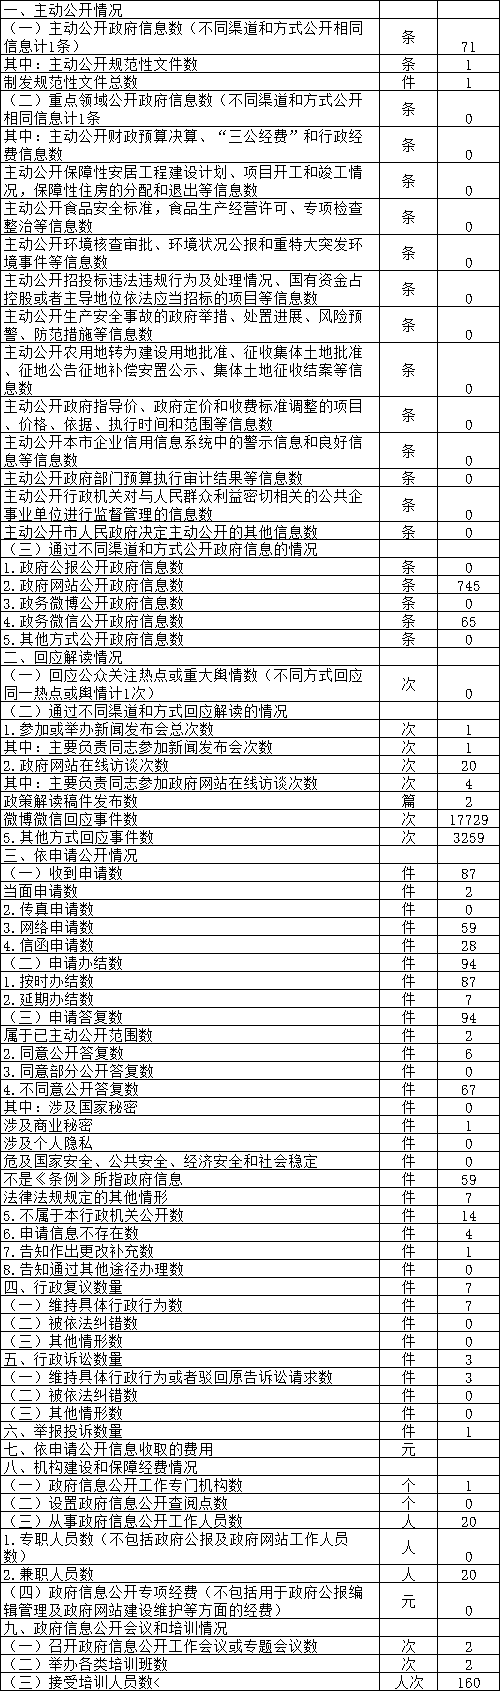 北京市信访办公室政府信息公开情况统计表(2017年度)